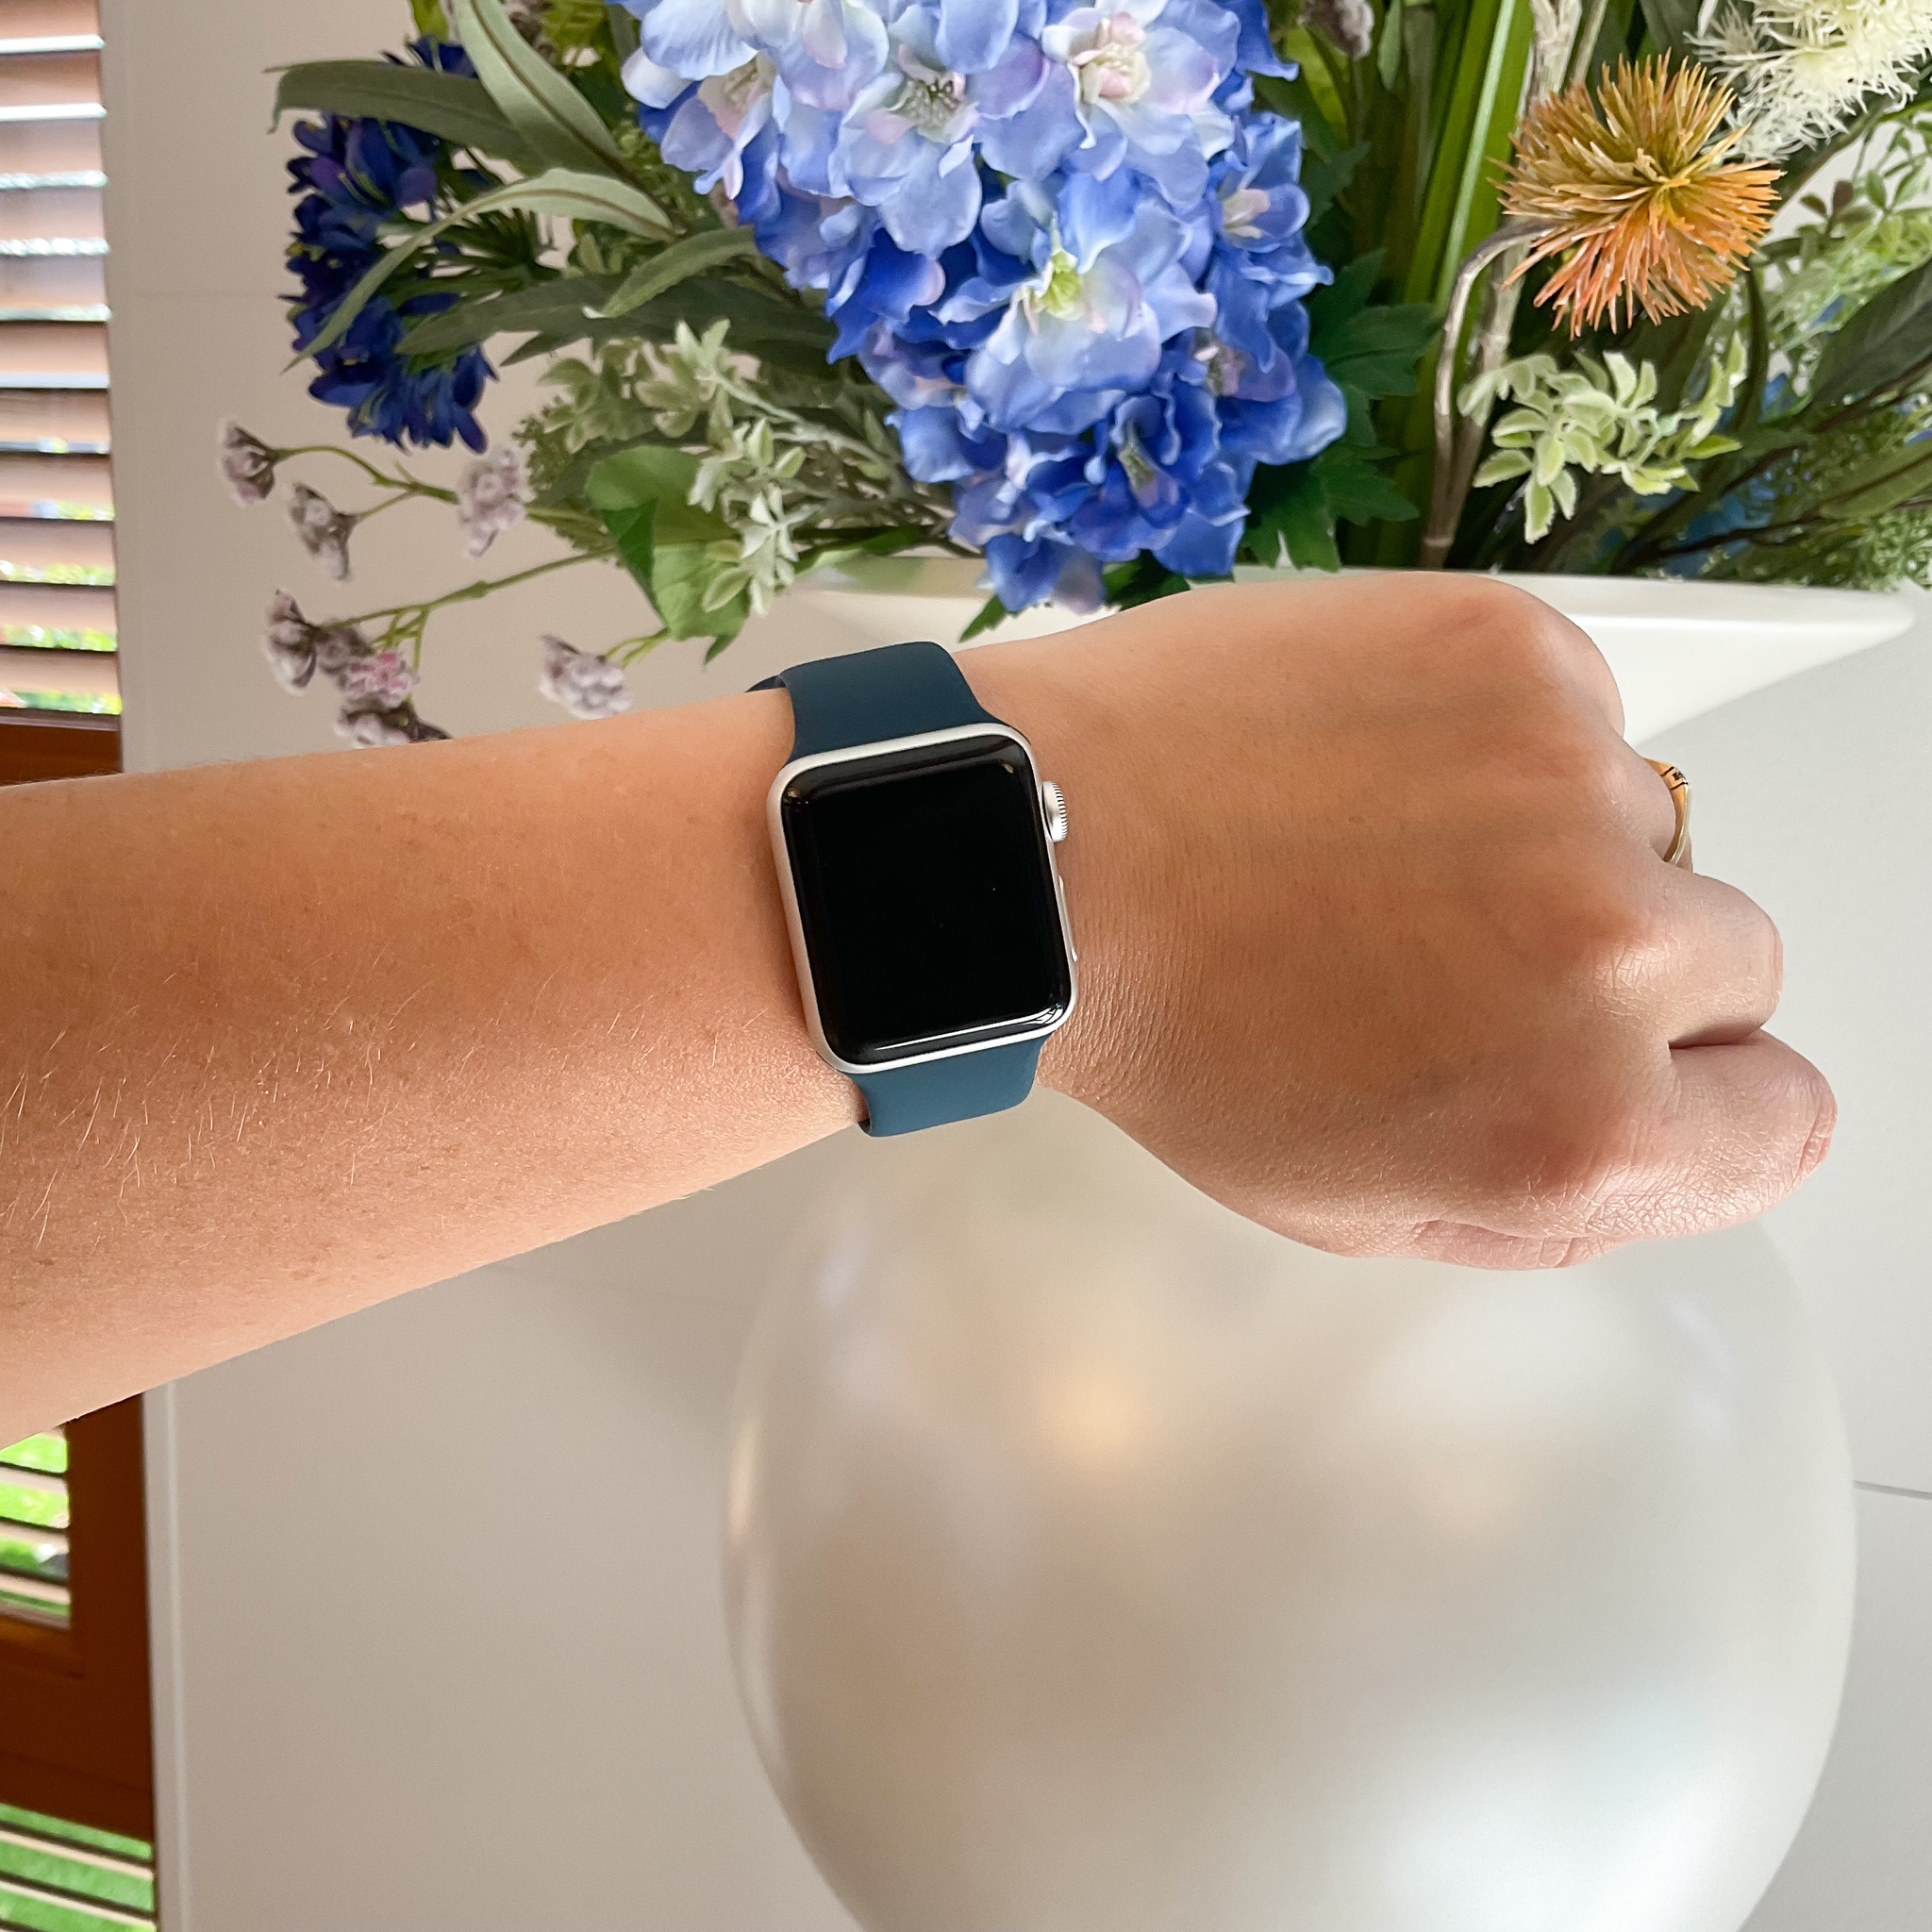  Apple Watch sport gumiabroncs - abyss kék